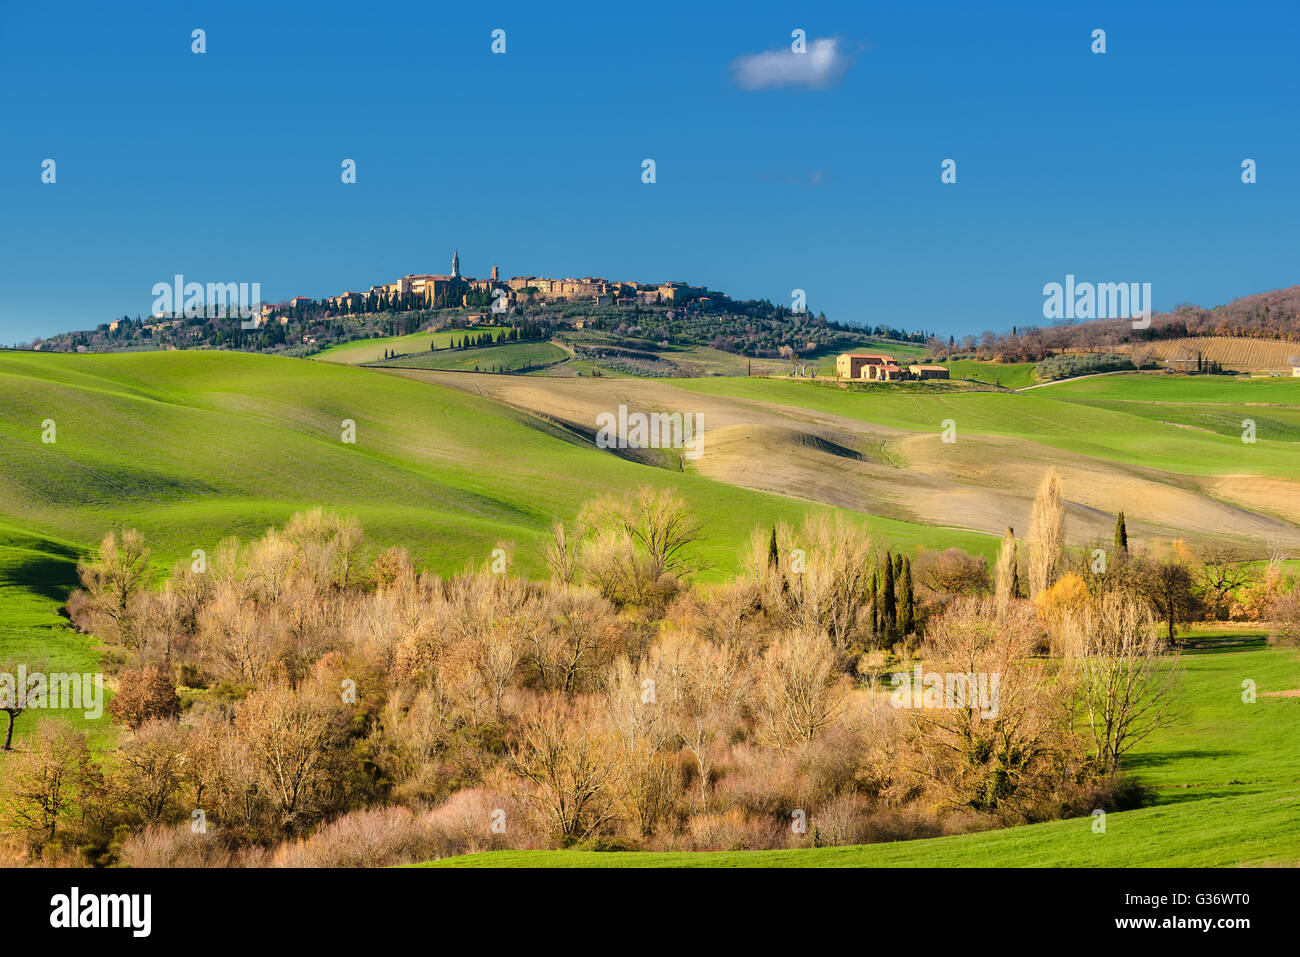 Belle vue du printemps de la ville médiévale en Italie. Banque D'Images